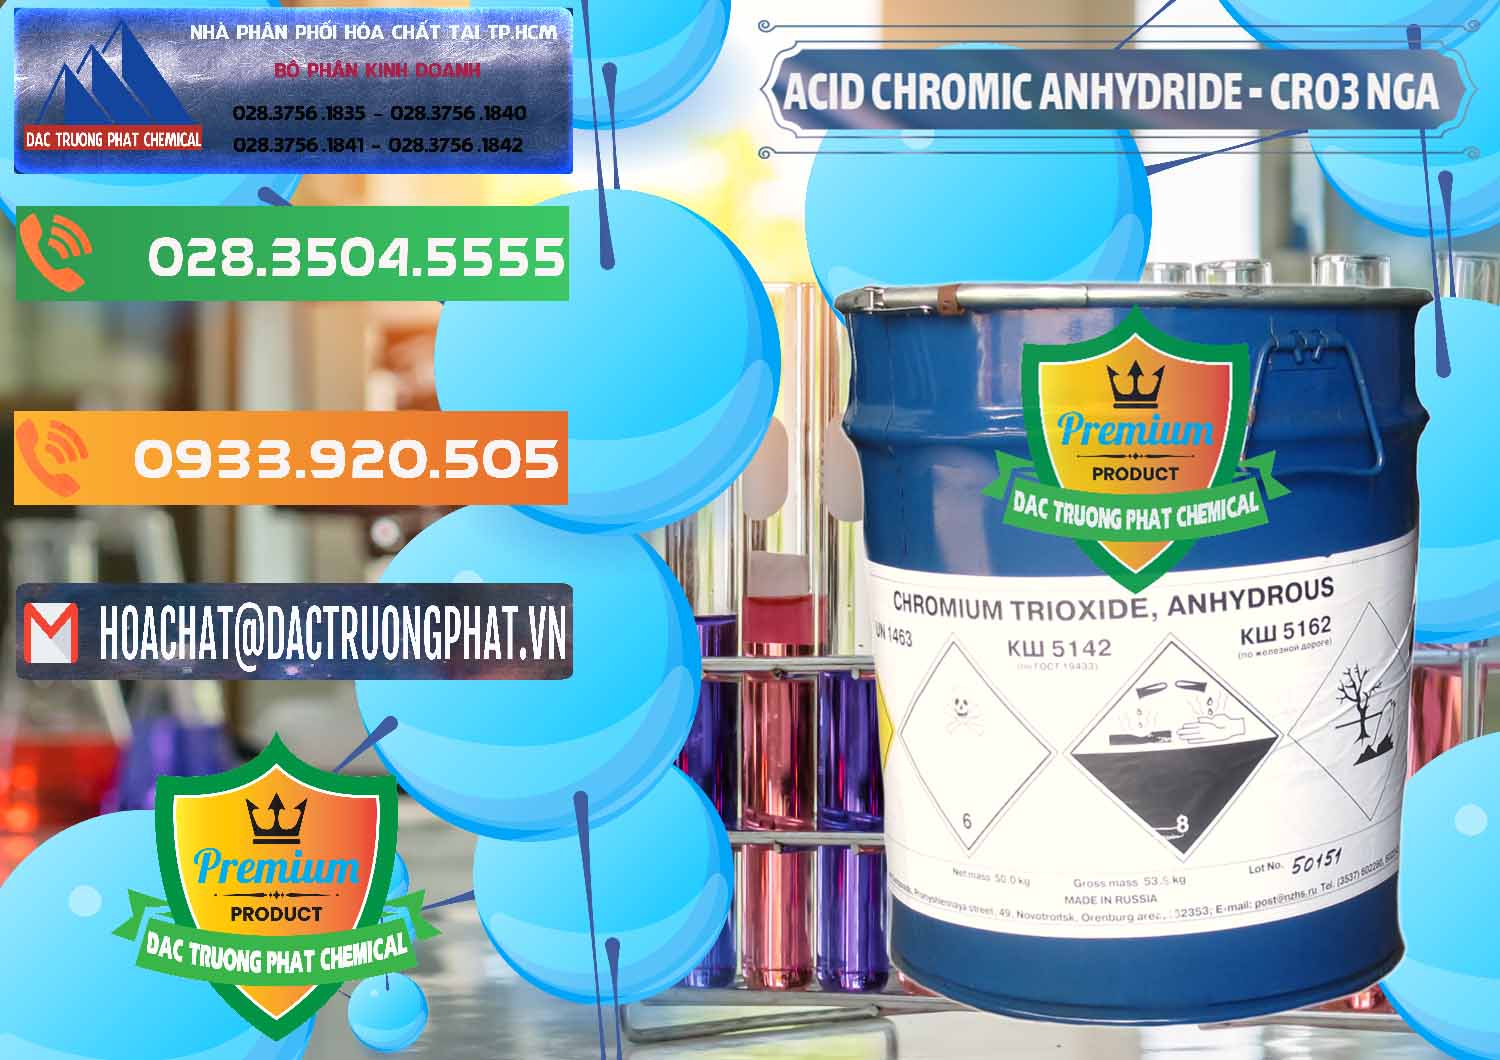 Cty cung cấp _ bán Acid Chromic Anhydride - Cromic CRO3 Nga Russia - 0006 - Cty chuyên nhập khẩu - cung cấp hóa chất tại TP.HCM - hoachatxulynuoc.com.vn